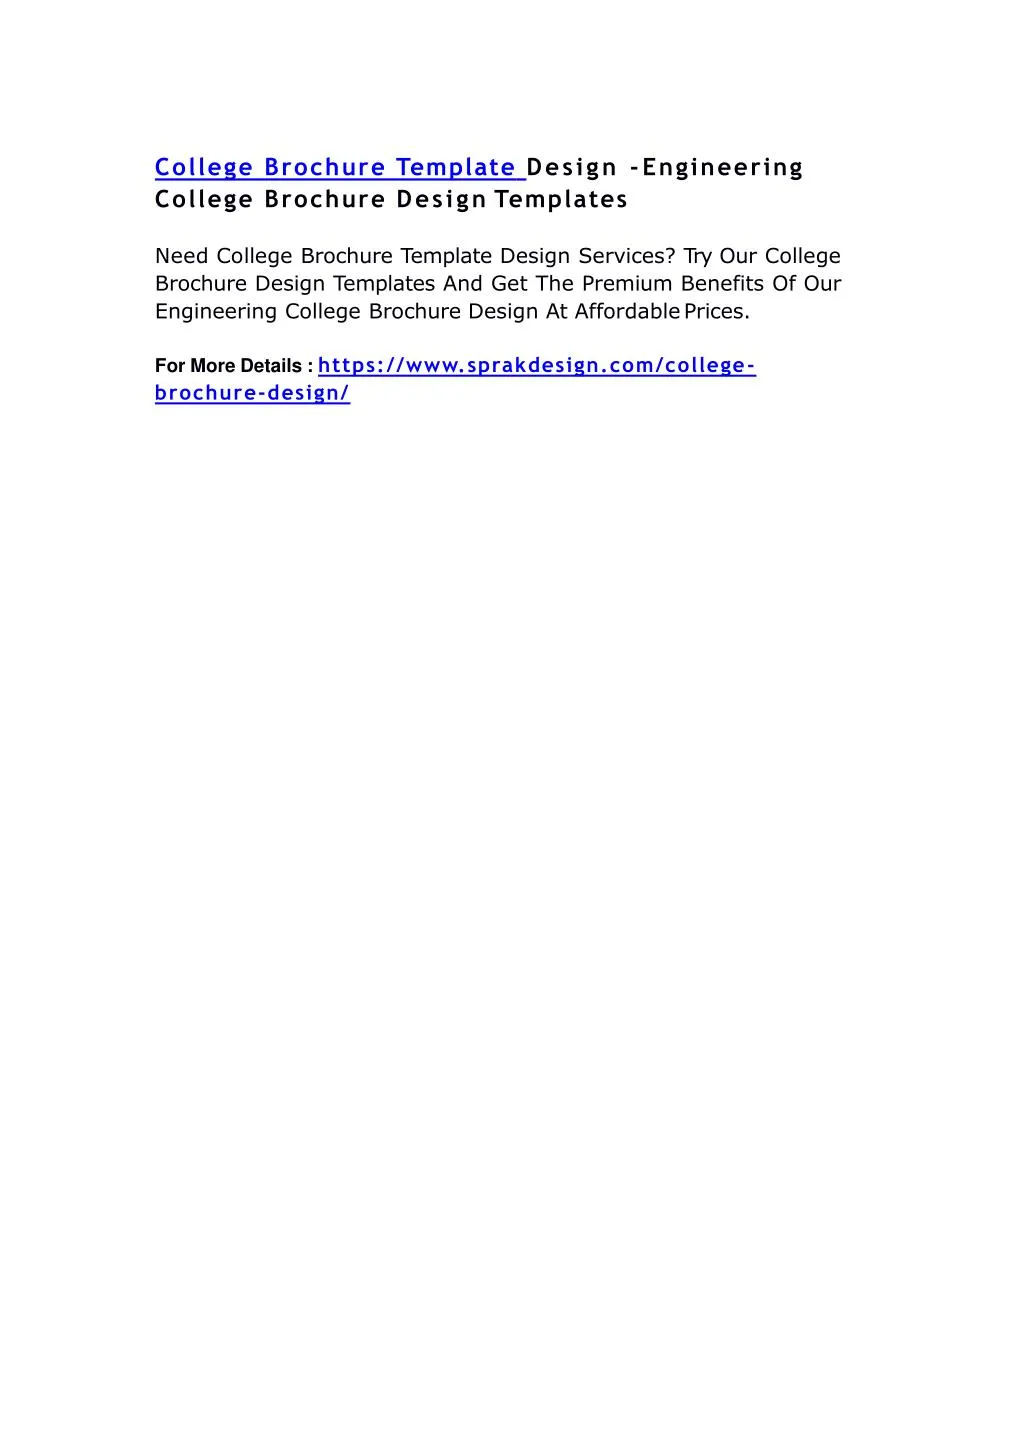 college brochure template design engineering